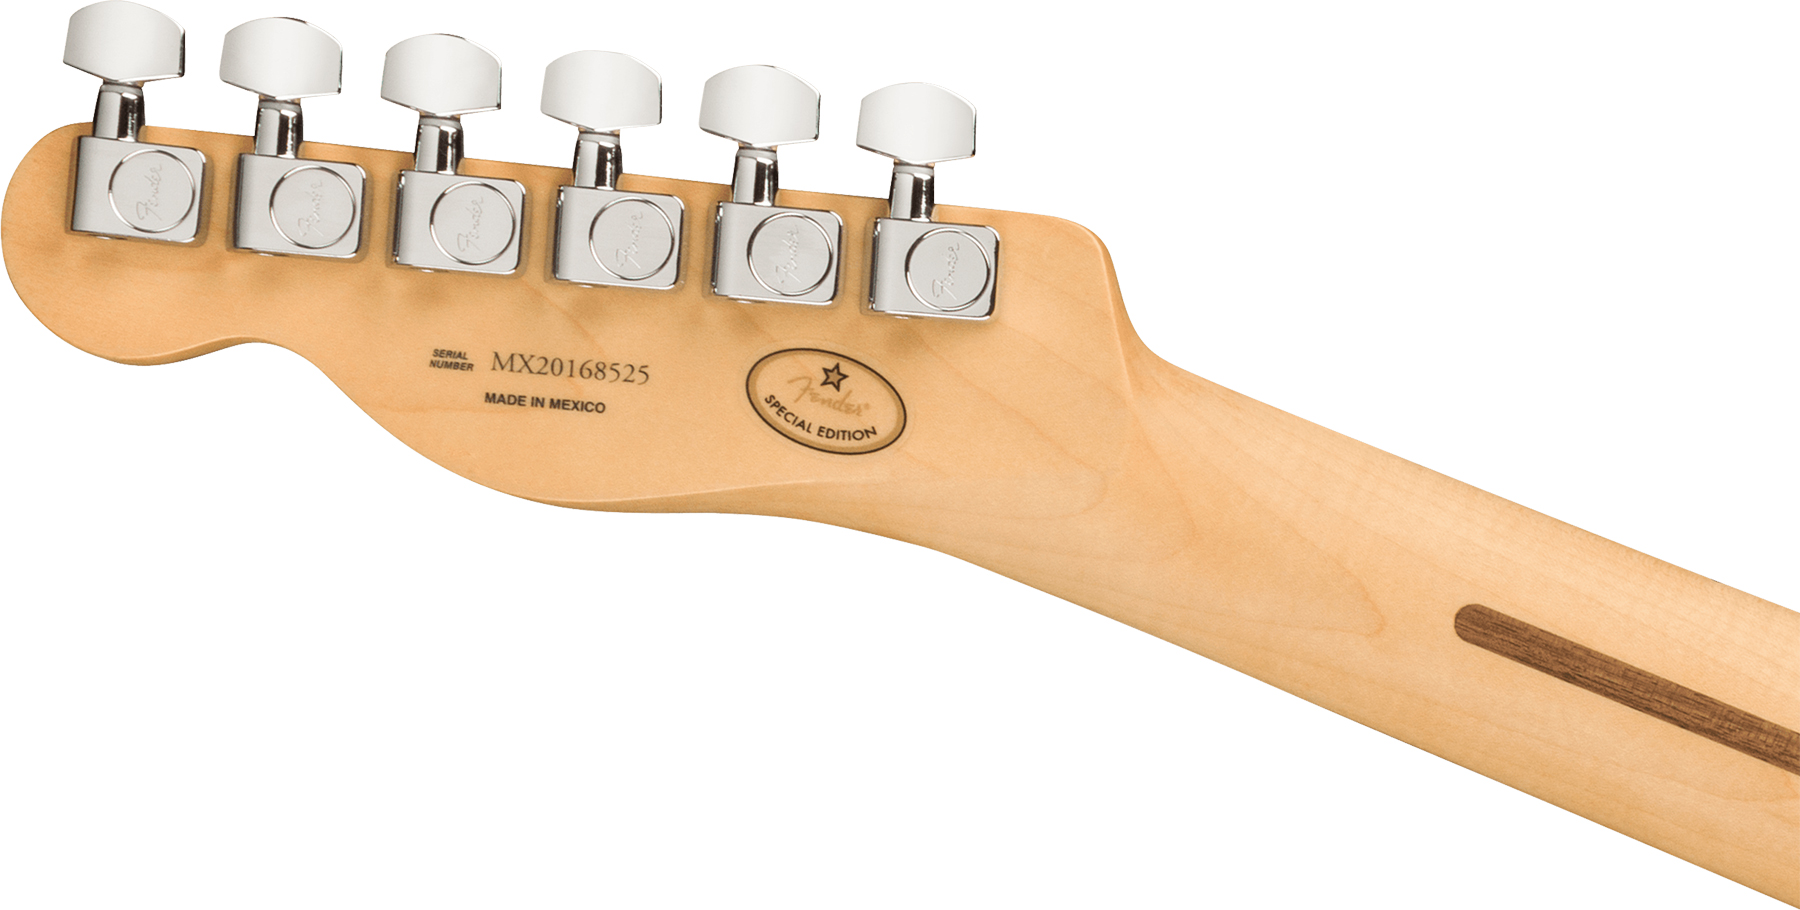 Fender Tele Player Ltd Mex 2s Ht Mn - Pacific Peach - Televorm elektrische gitaar - Variation 3